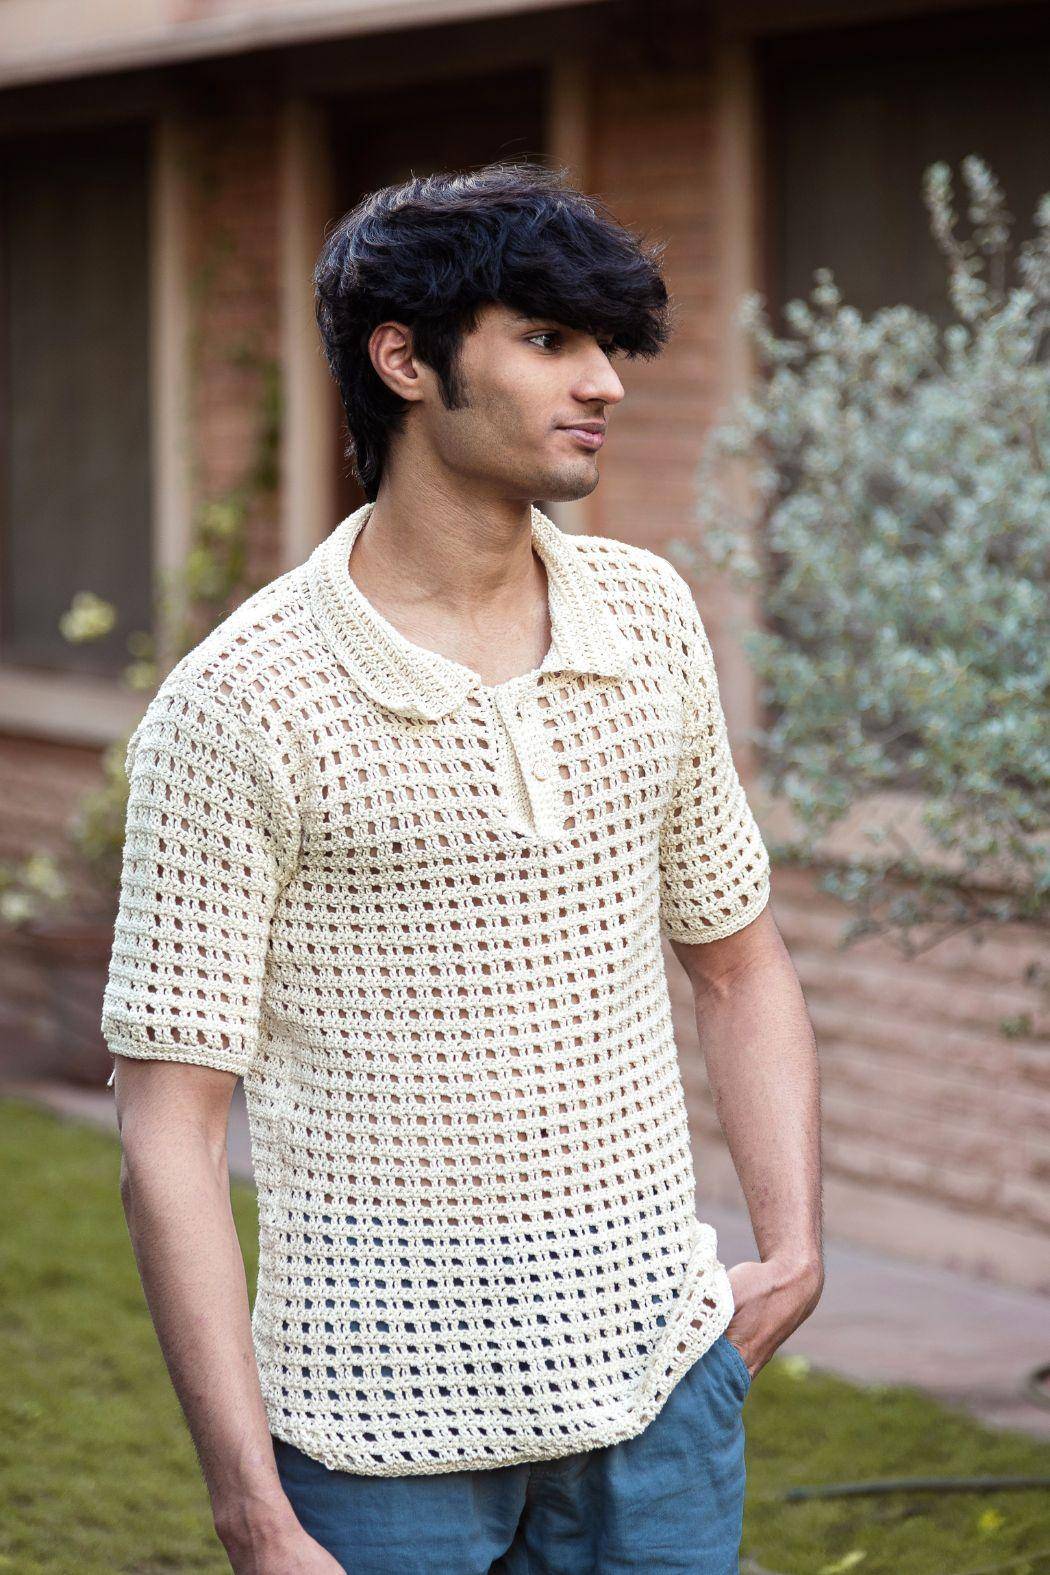 Sass Obsessed Off White Tee For Men - Crochet Cotton T shirt For Men - Crochet Cotton Off White Tshirt For Men